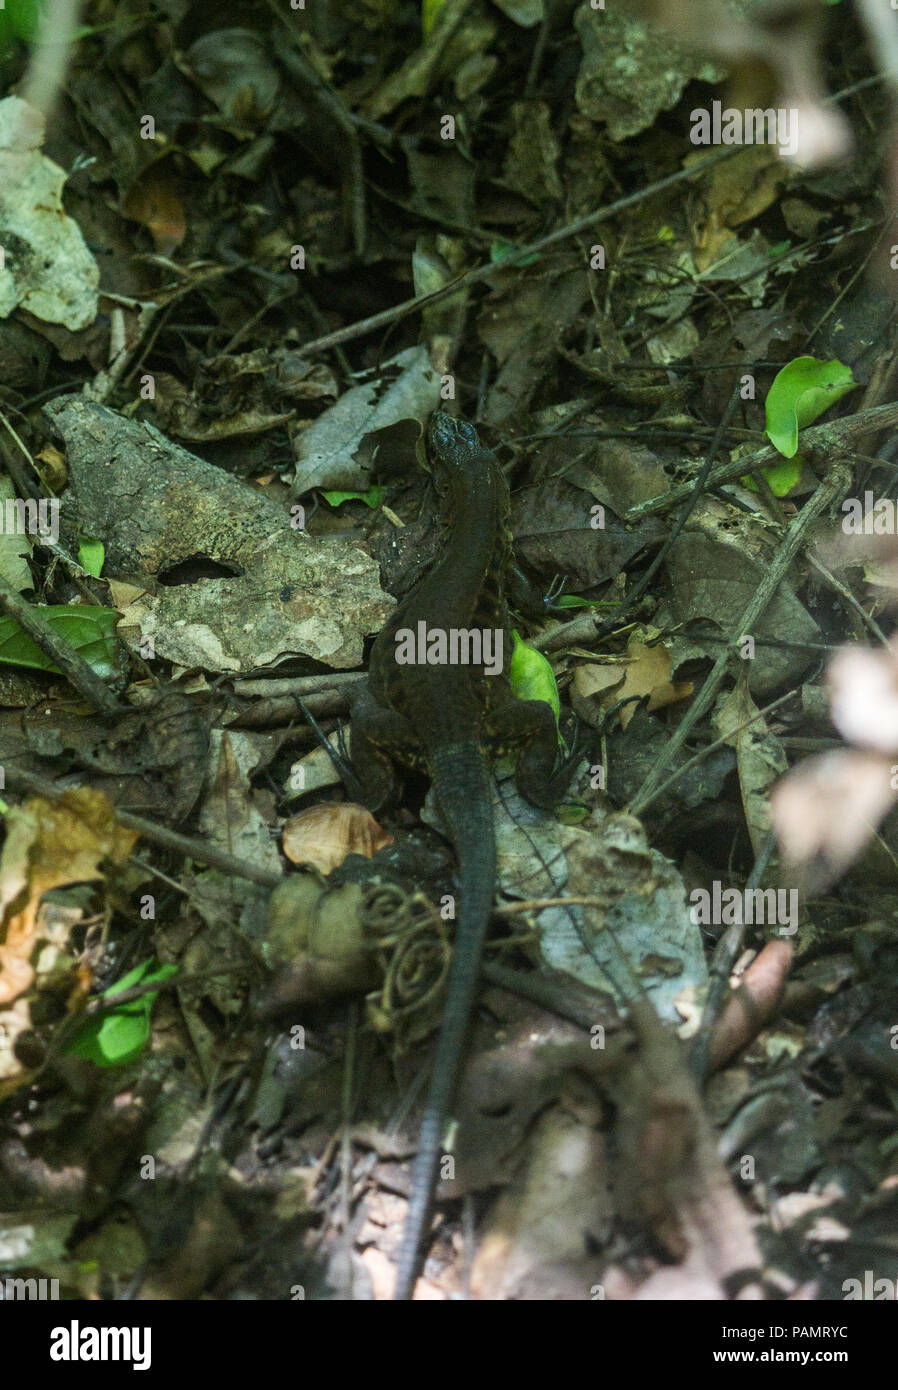 Getarnt iguana/Eidechse im Unterholz des Regenwaldes in Costa Rica Stockfoto